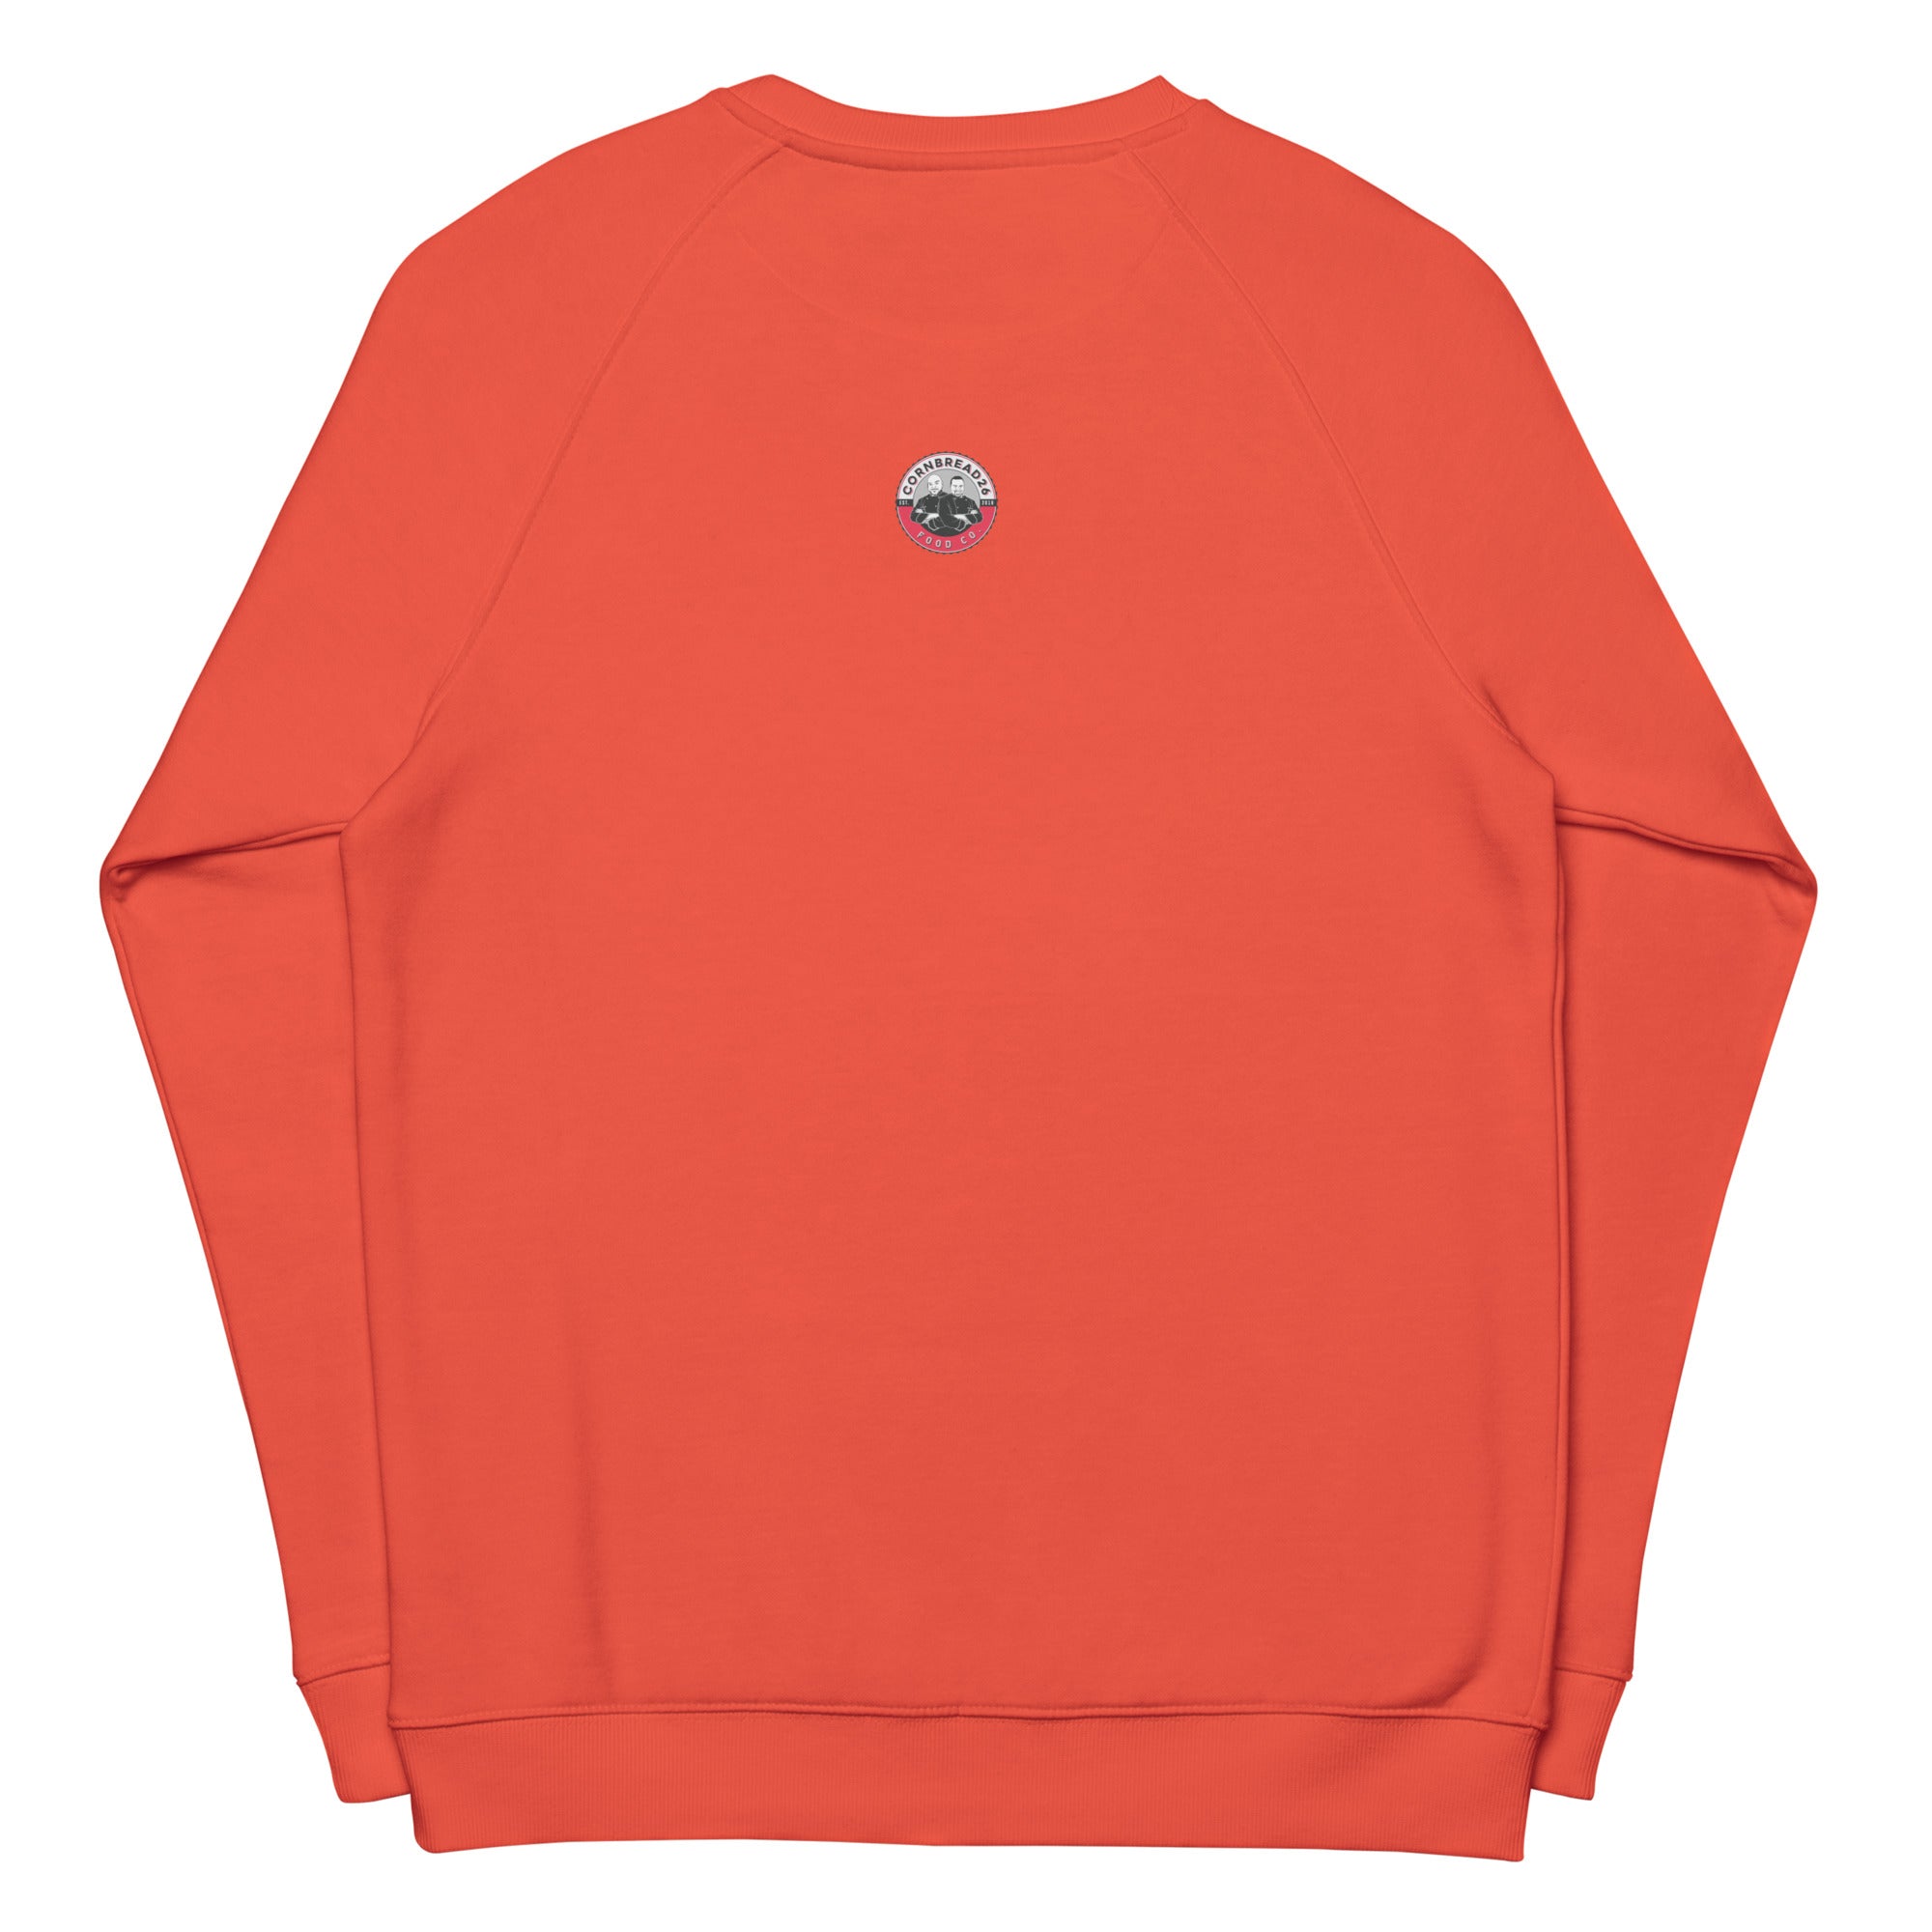 Unisex "Cookie Butter" Stitched Organic Raglan Sweatshirt - THE CORNBREAD KITCHEN SHOP